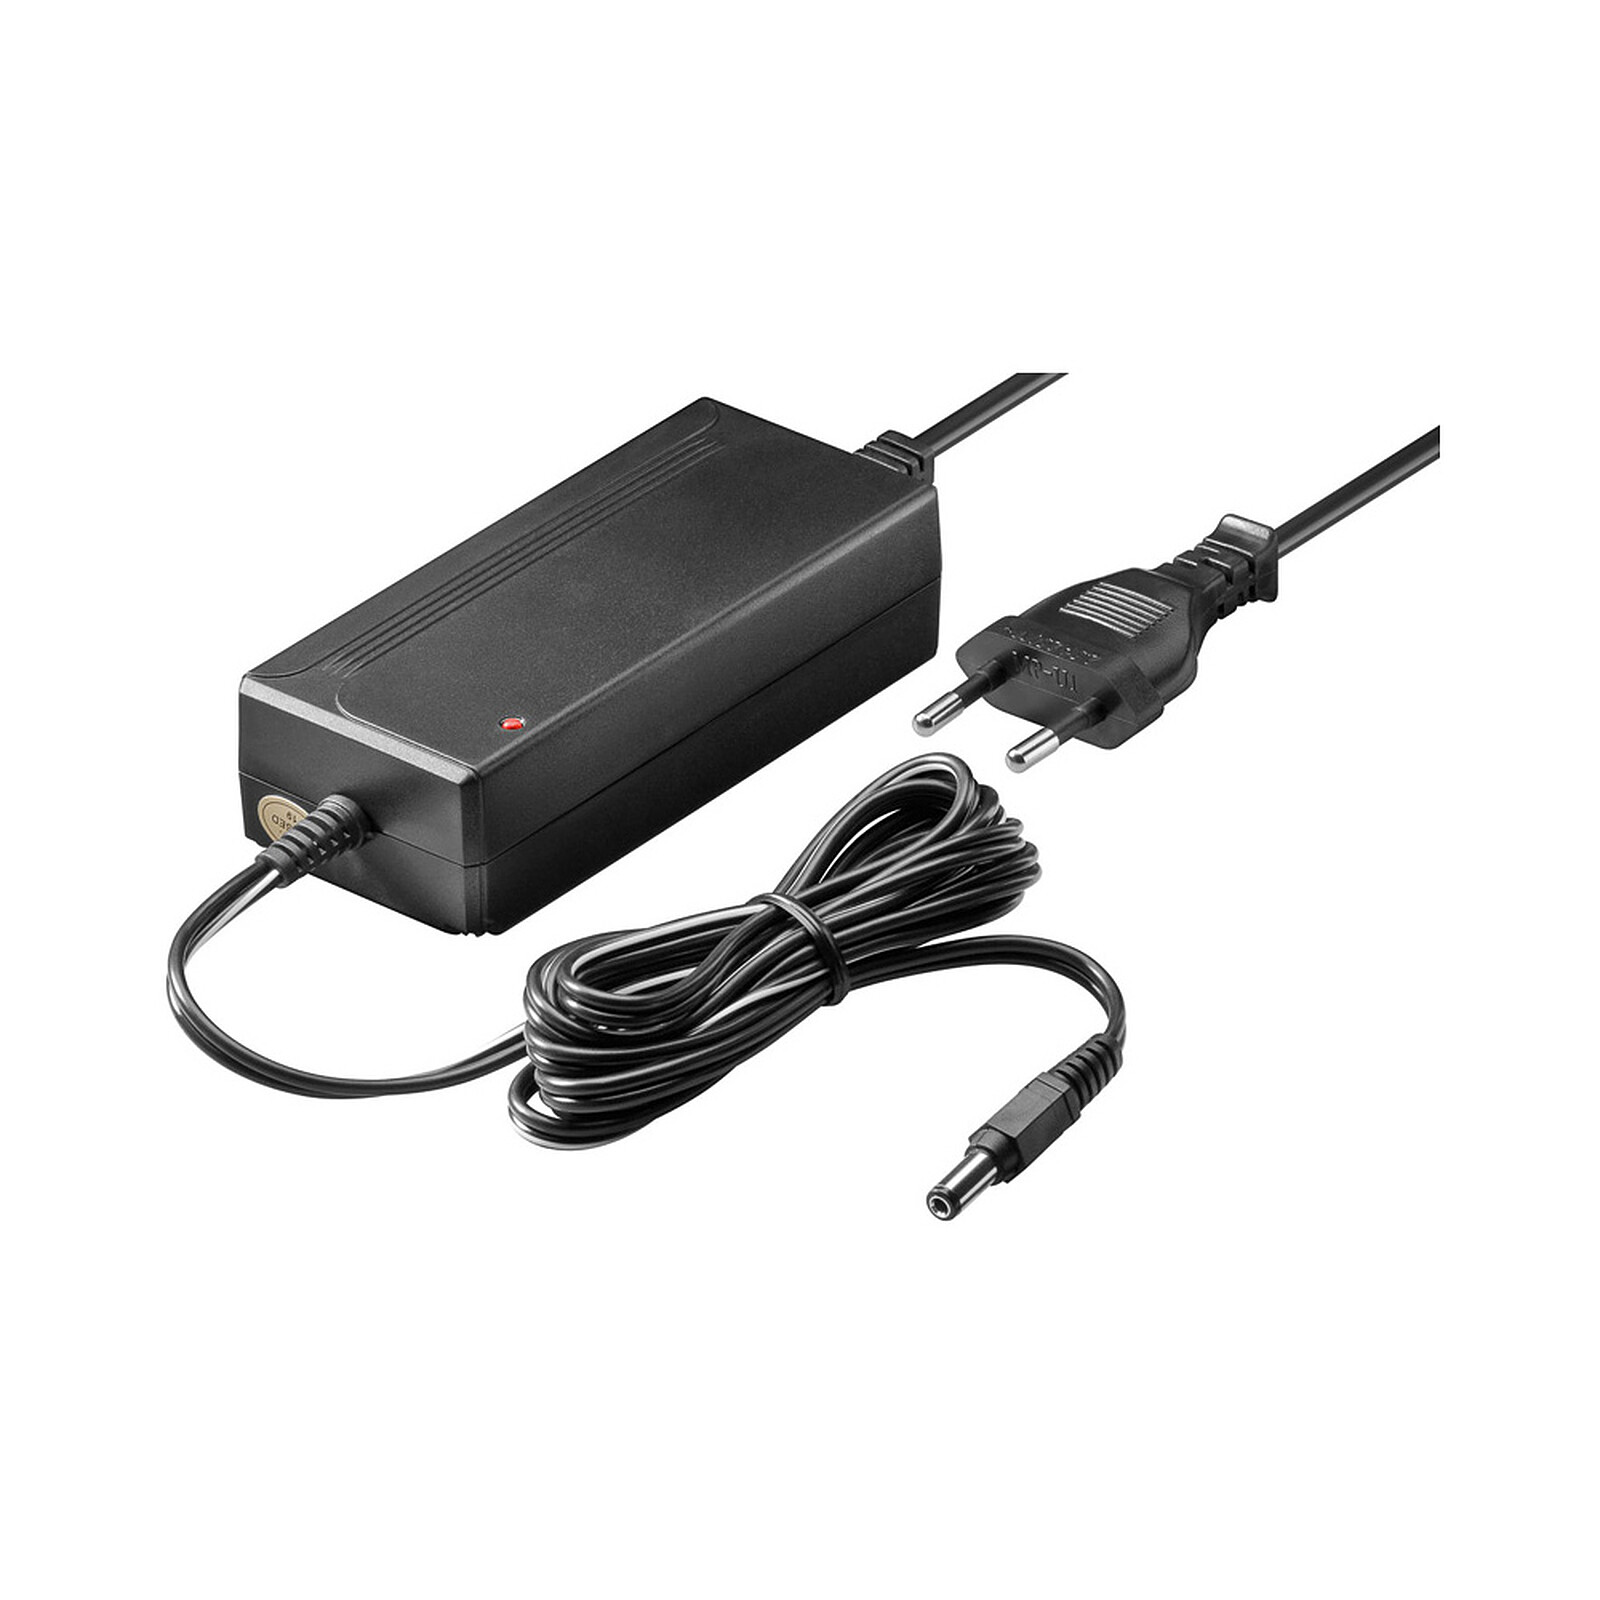 Doble cable de alimentación para PC, monitor y ondulador (1,8 m) - Cable  sector - LDLC